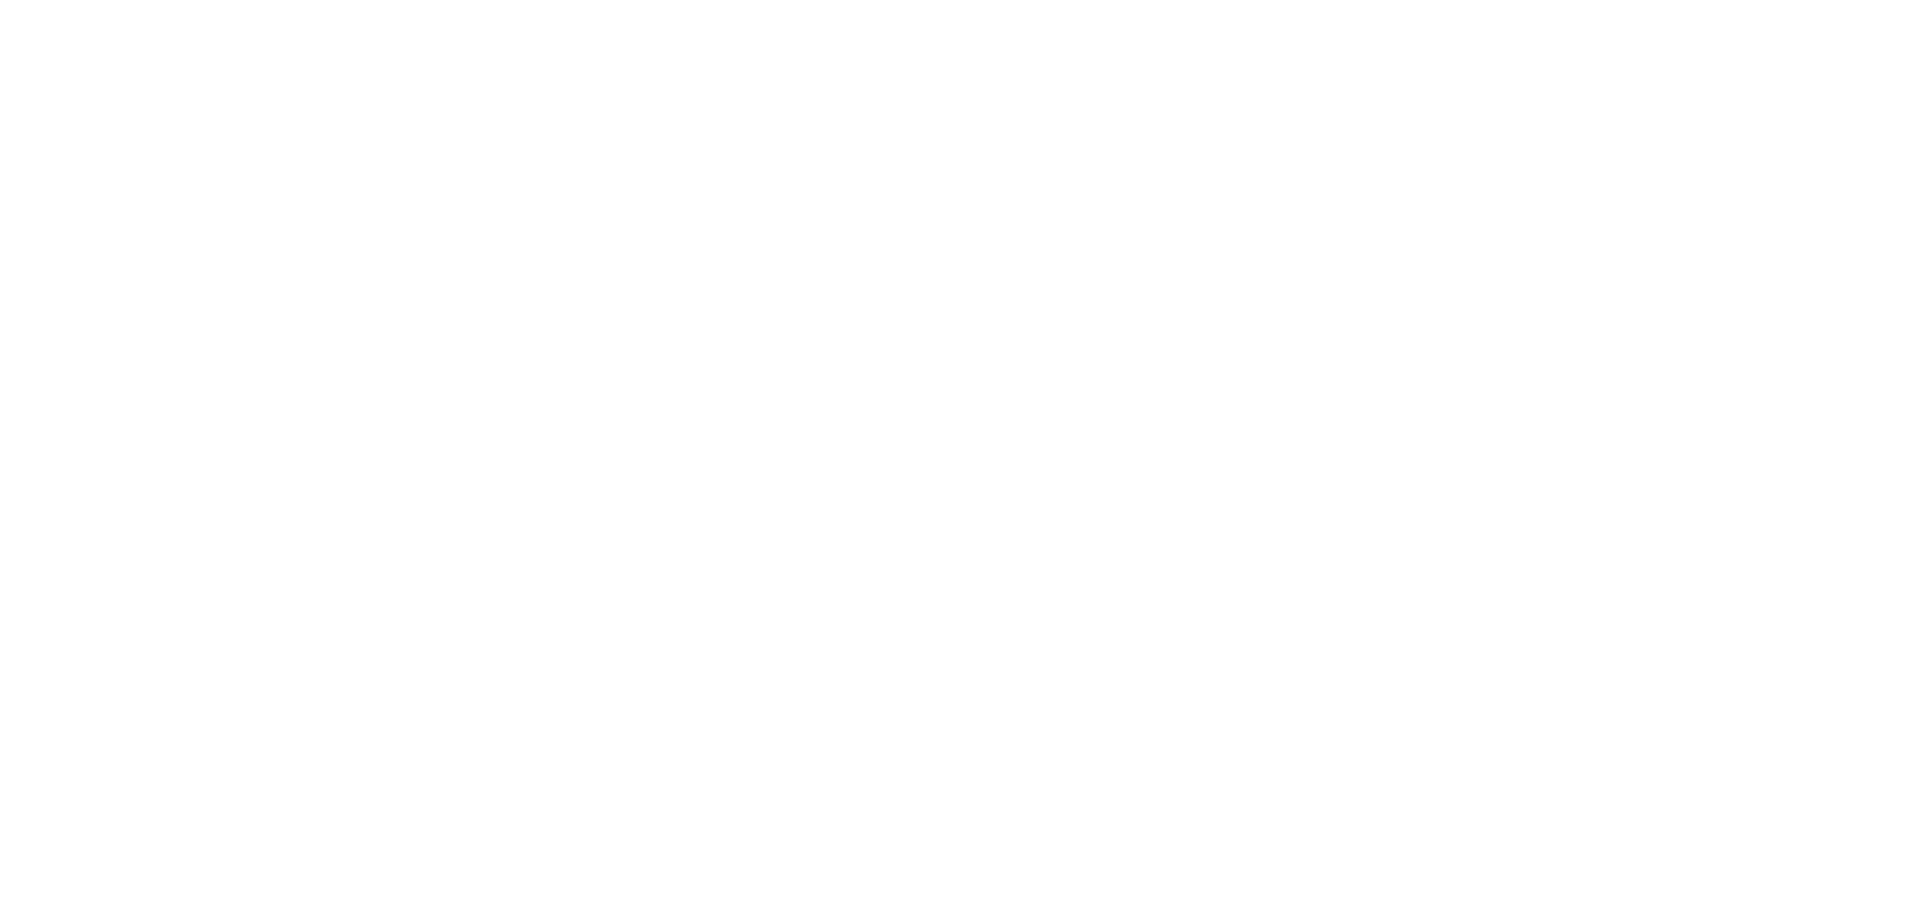 Lalique Beauty Services